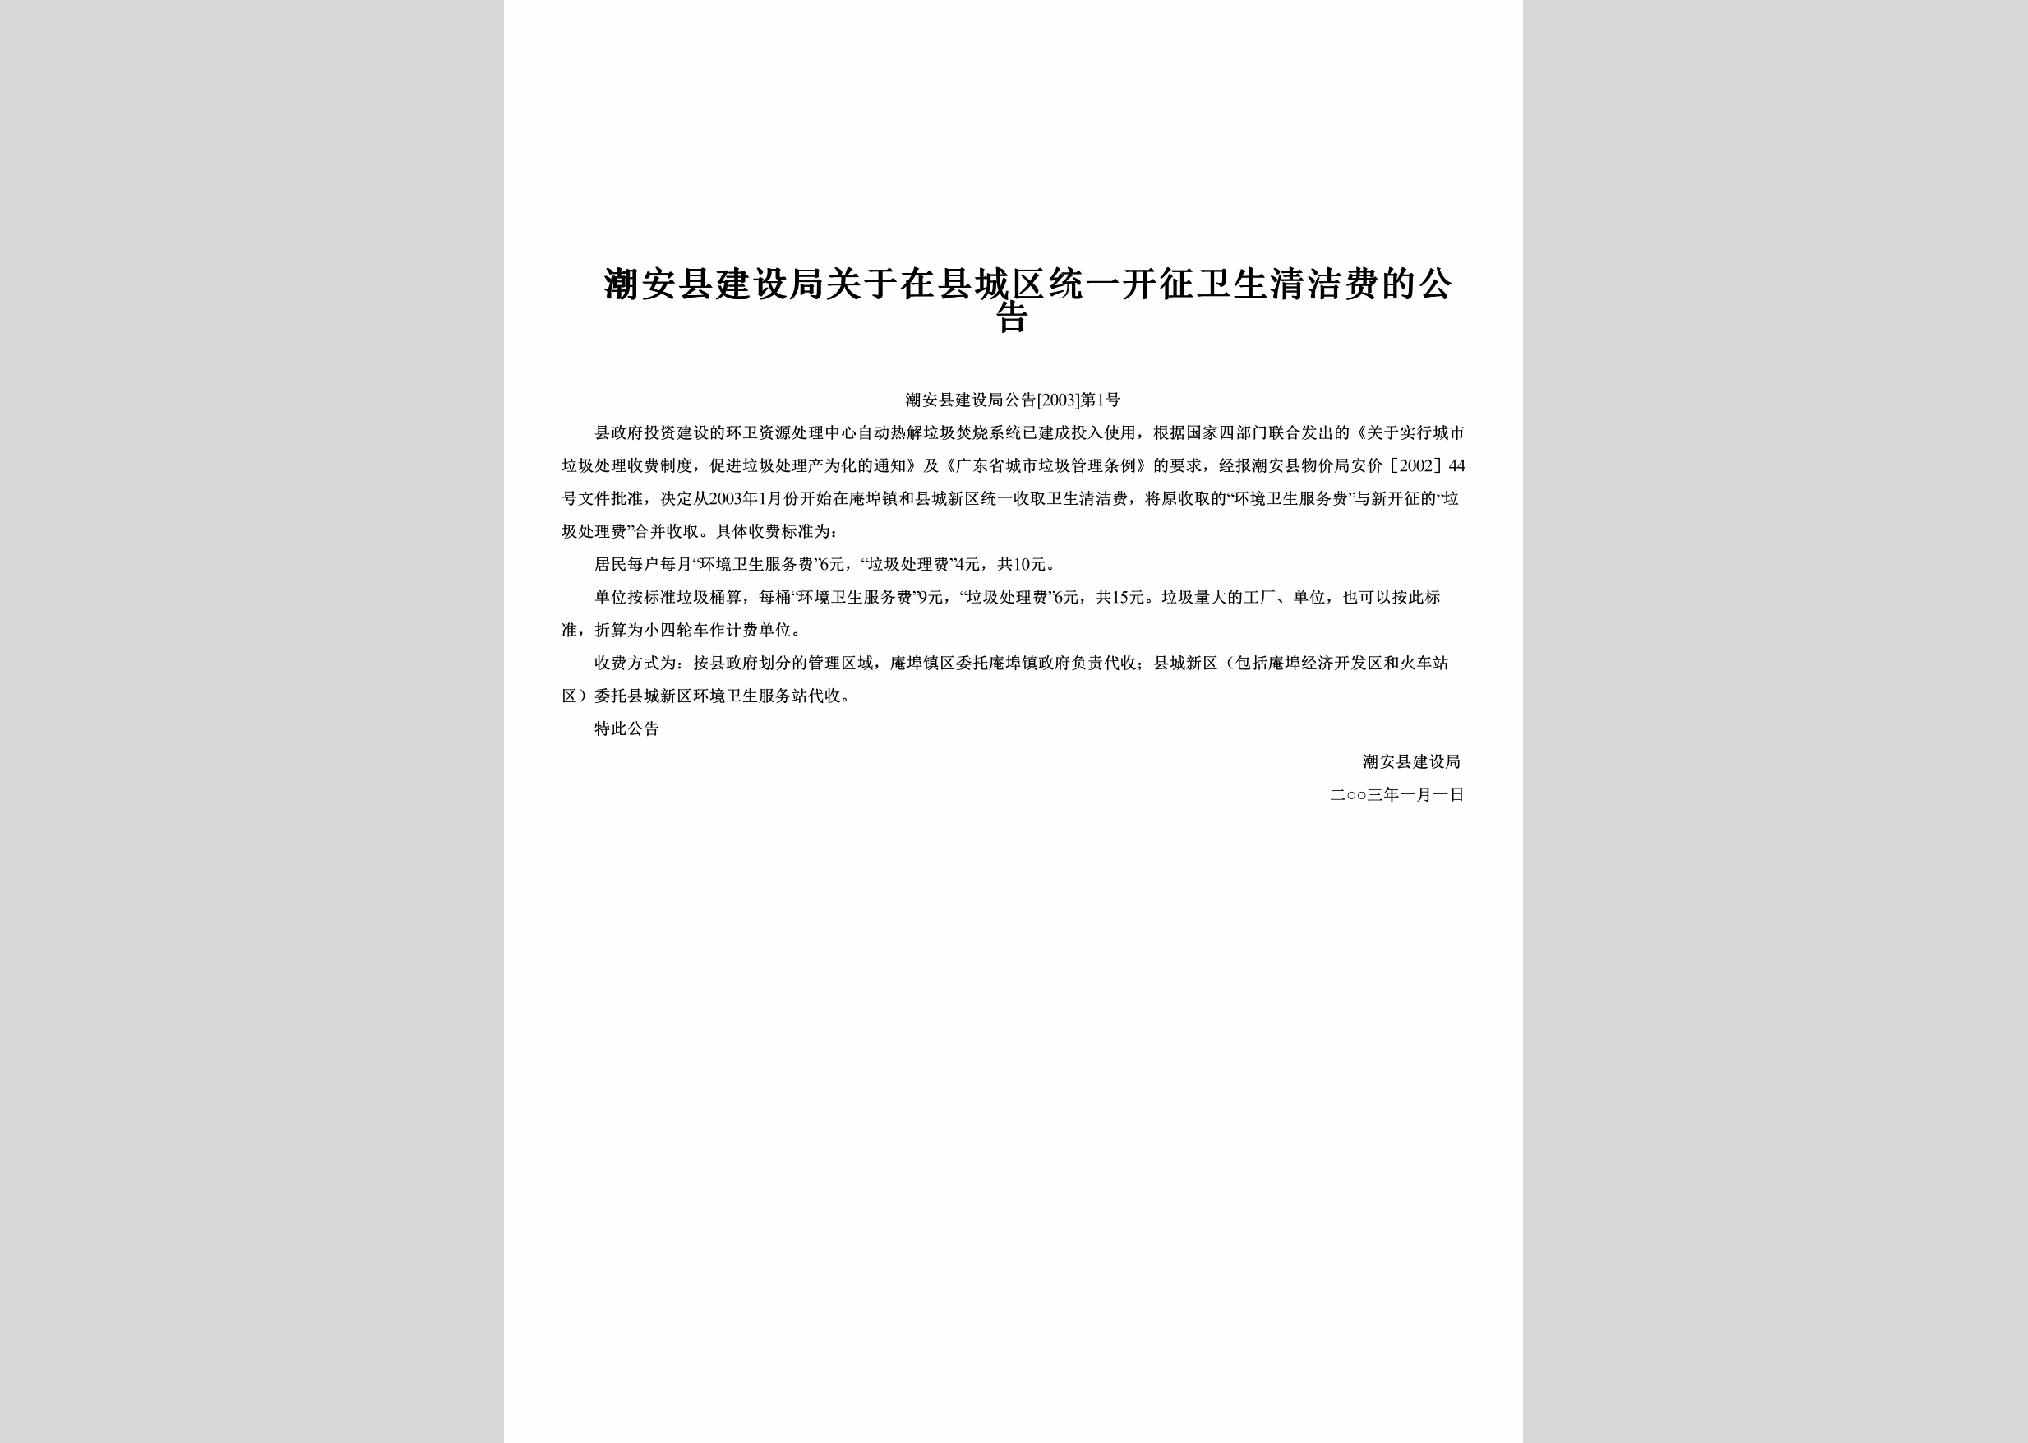 潮安县建设局公告[2003]第1号：关于在县城区统一开征卫生清洁费的公告